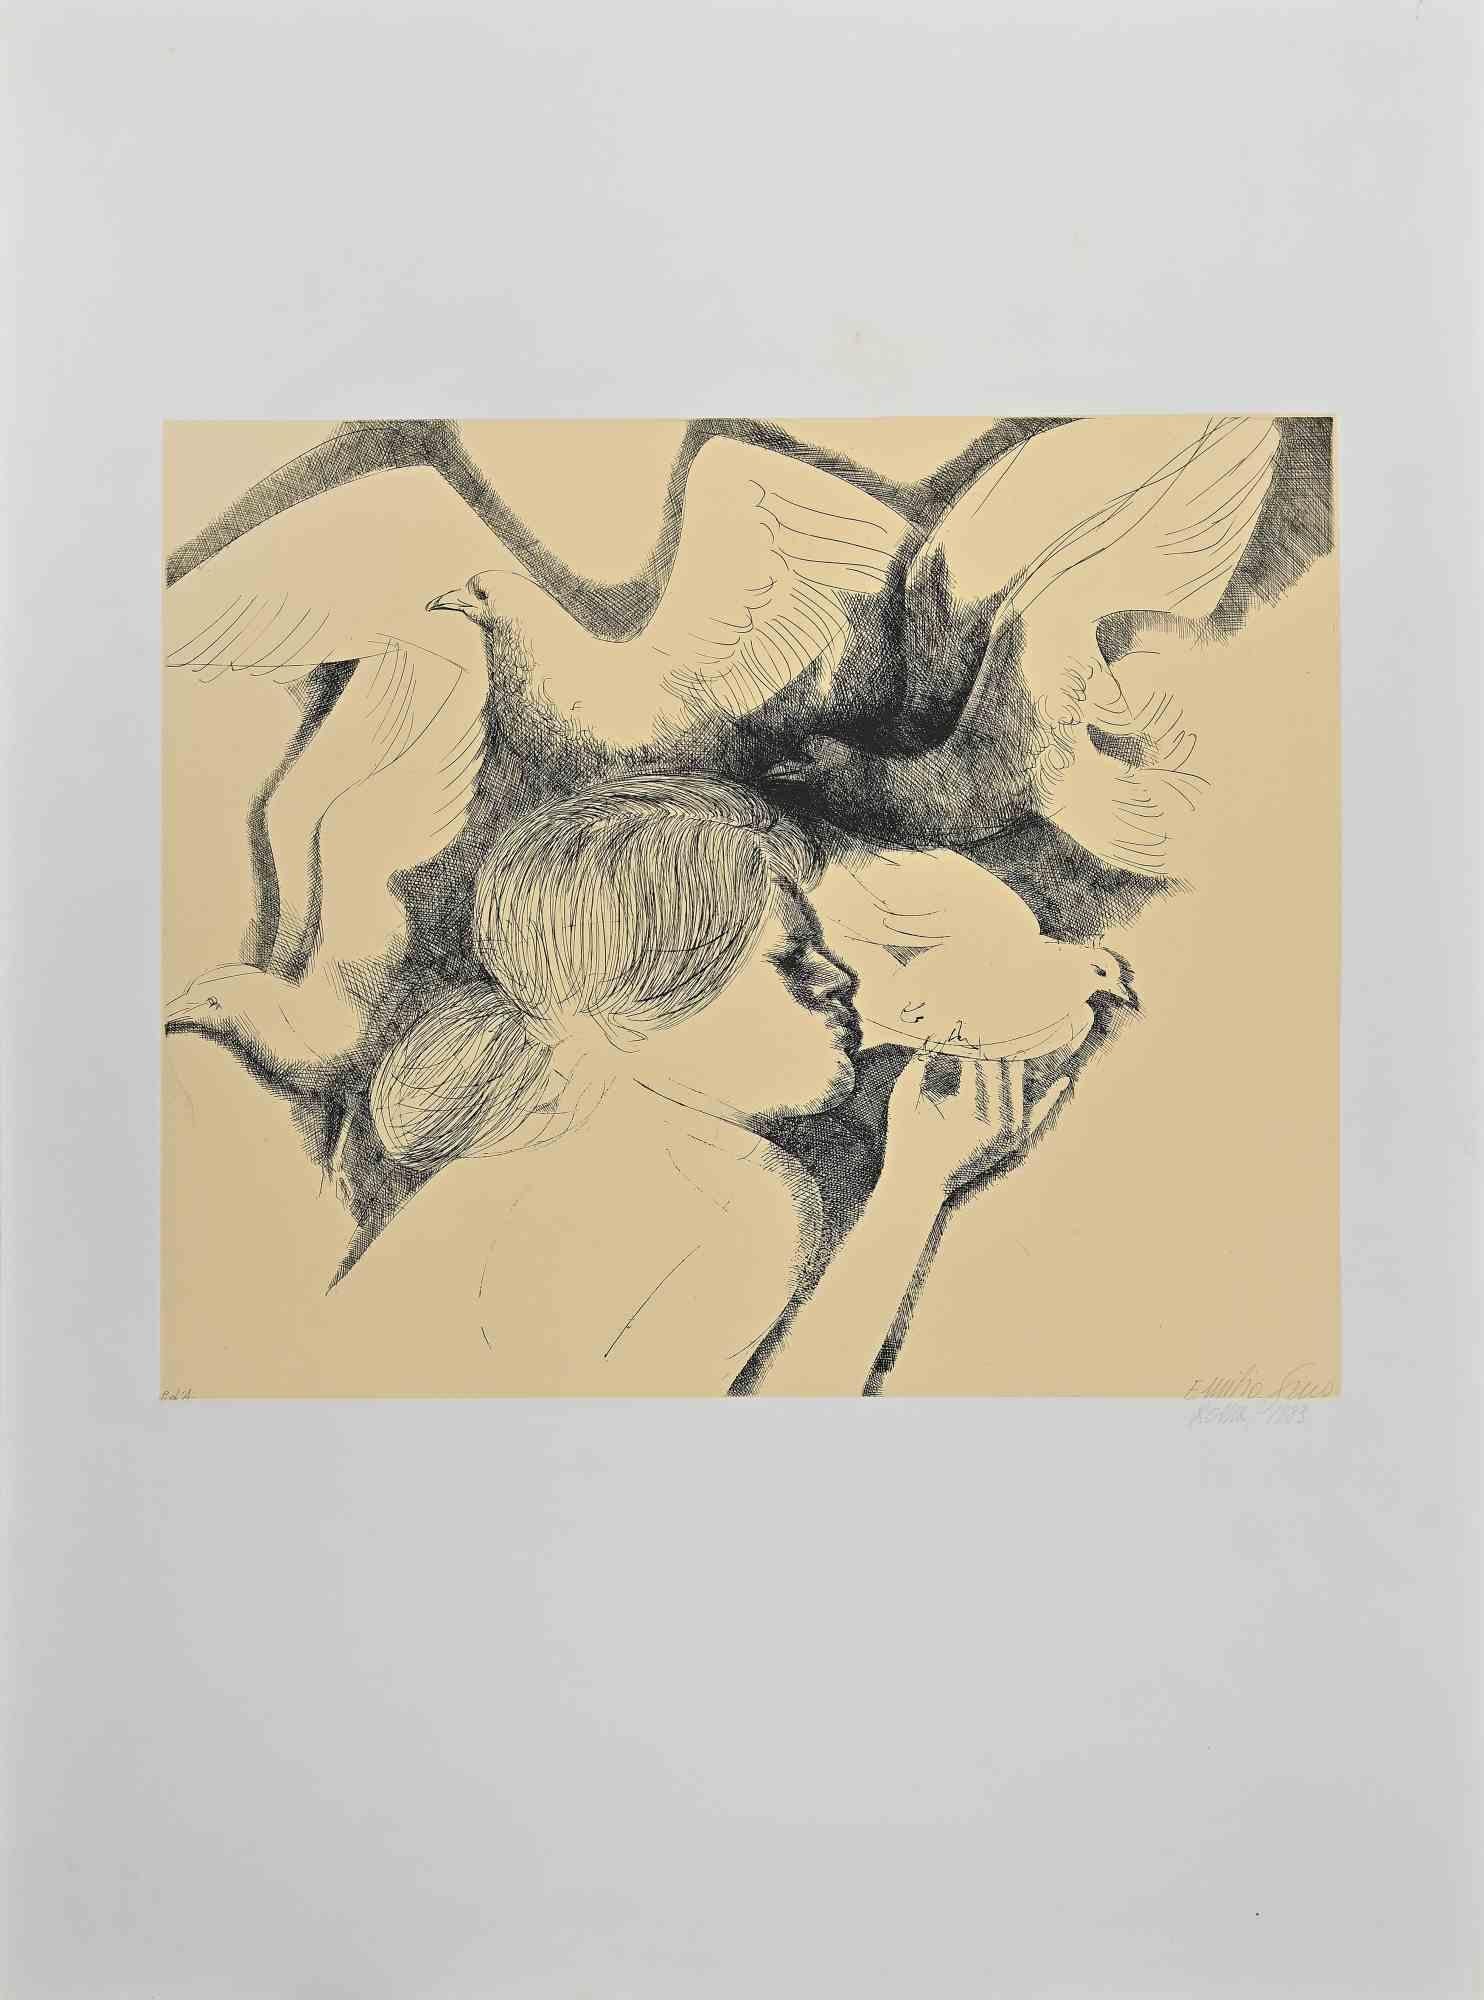 Les Pigeons est une gravure réalisée par Emilio Greco en 1983.

Signé à la main, daté de 1983, Rome.

Edition pda.

Bon état.

Emilio Greco (11 octobre 1913 à Catane, Sicile - 5 avril 1995) était un sculpteur, graveur, médailleur, écrivain et poète